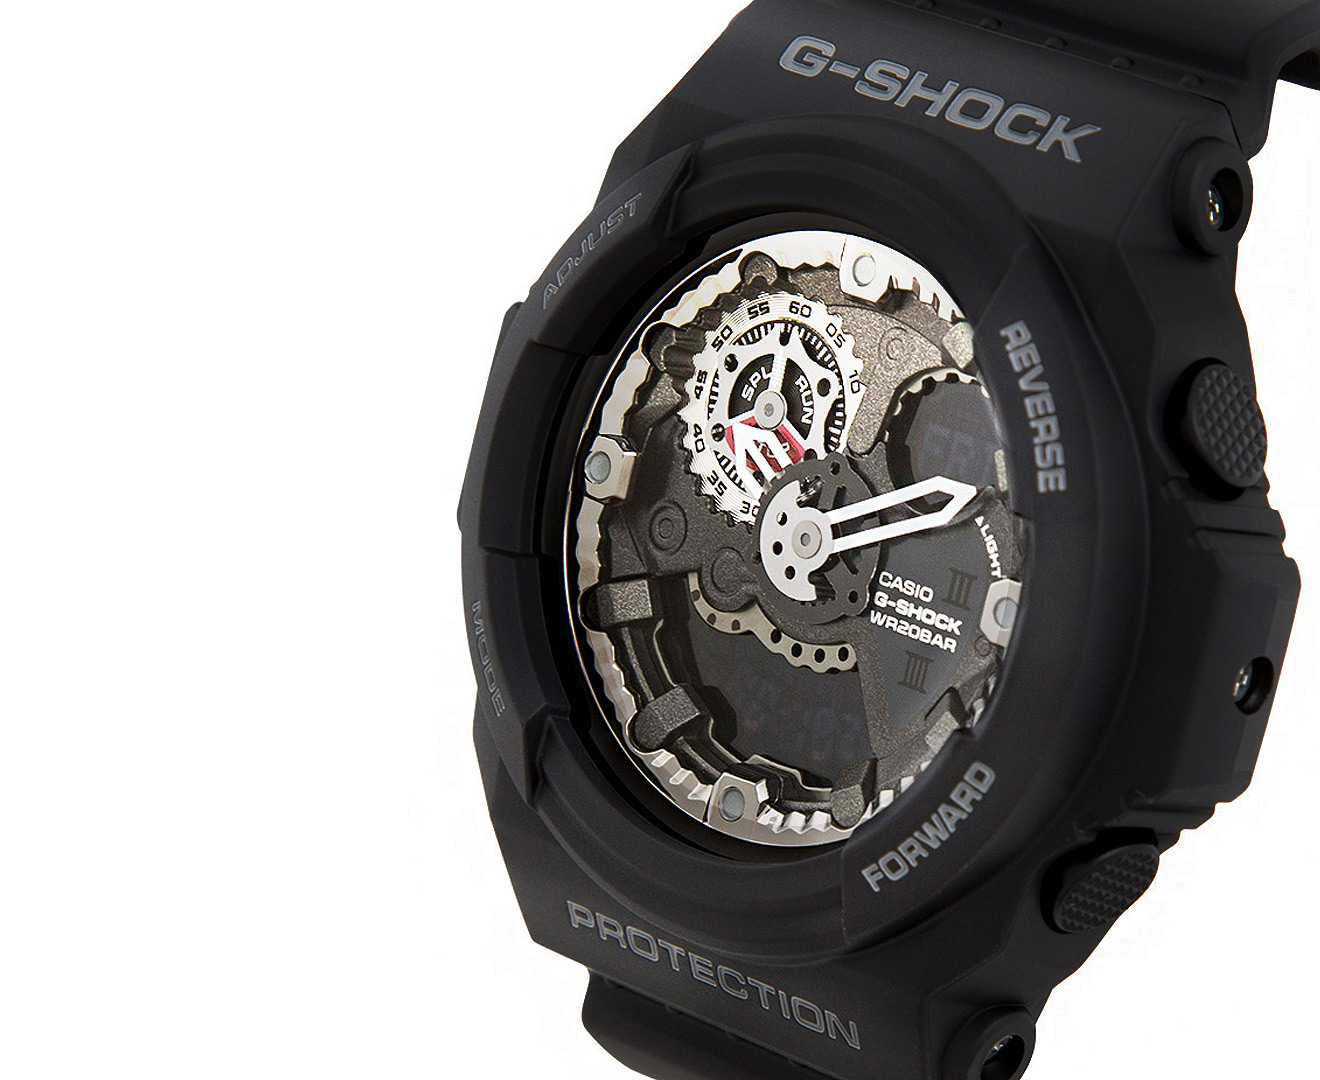 Casio Men's G-Shock GA300-1A Watch - Black | Catch.com.au